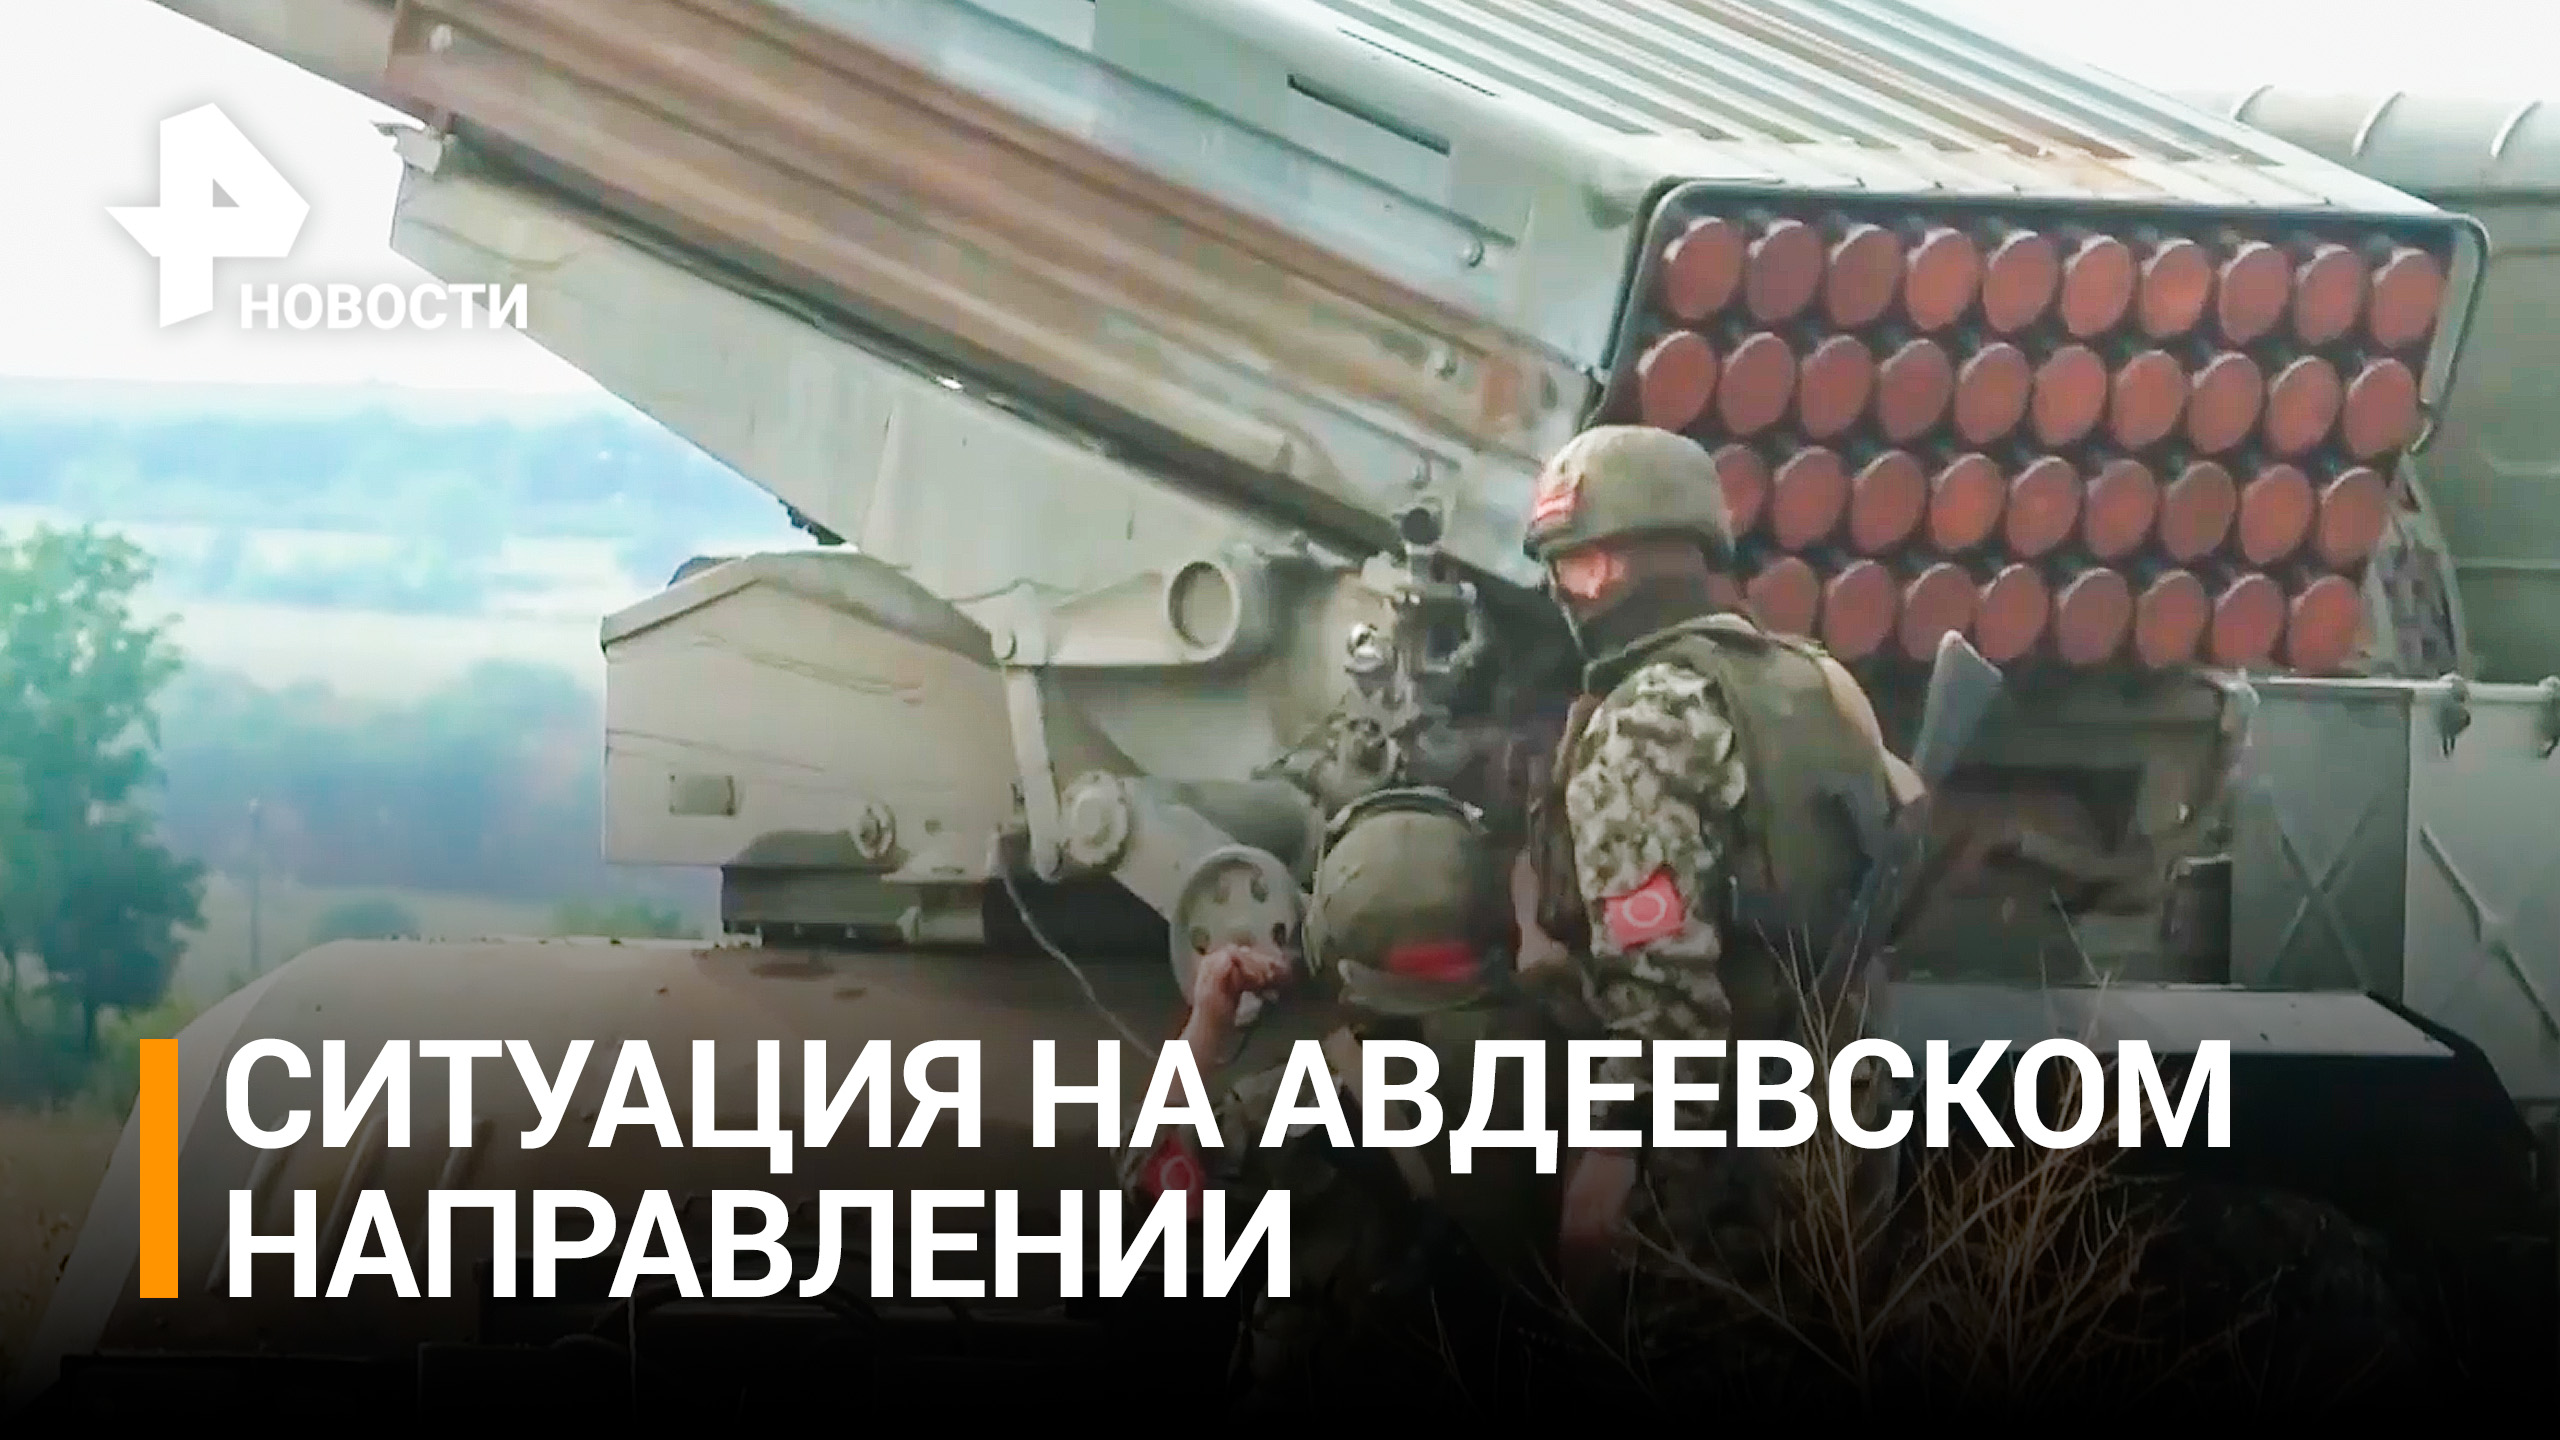 Союзные войска выбили националистов из укрепрайона под Авдеевкой / РЕН Новости